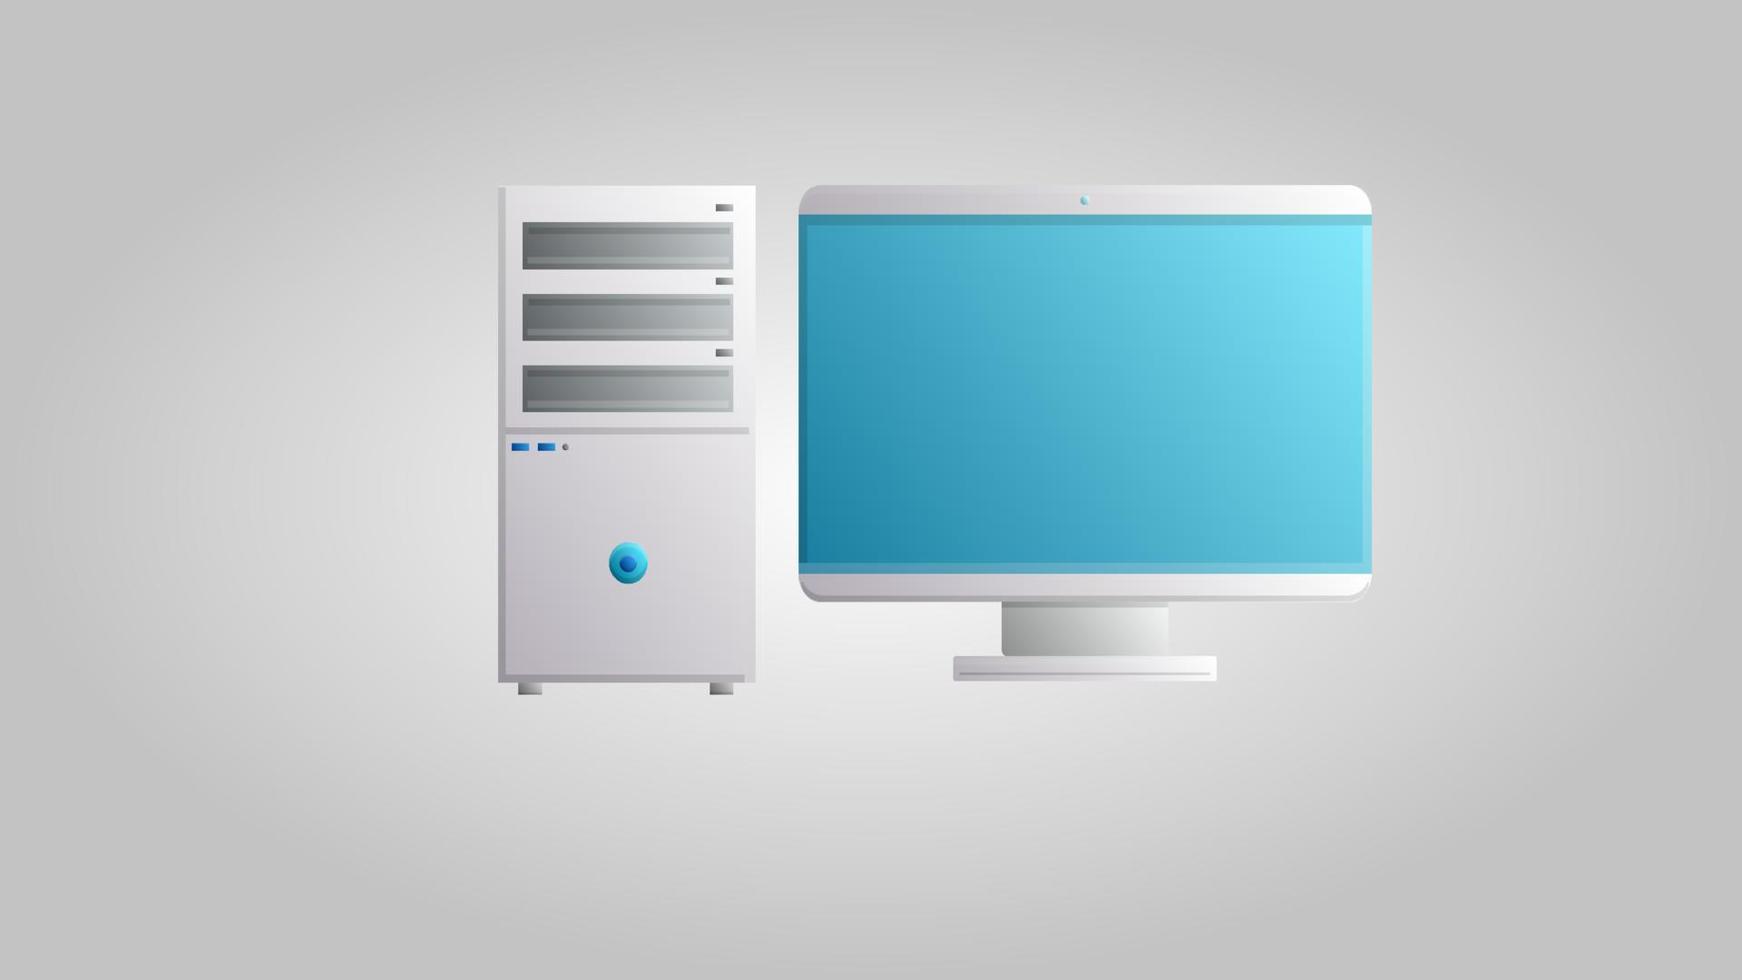 nueva computadora de oficina estacionaria digital moderna para juegos, trabajo y entretenimiento en un fondo blanco. ilustración vectorial vector